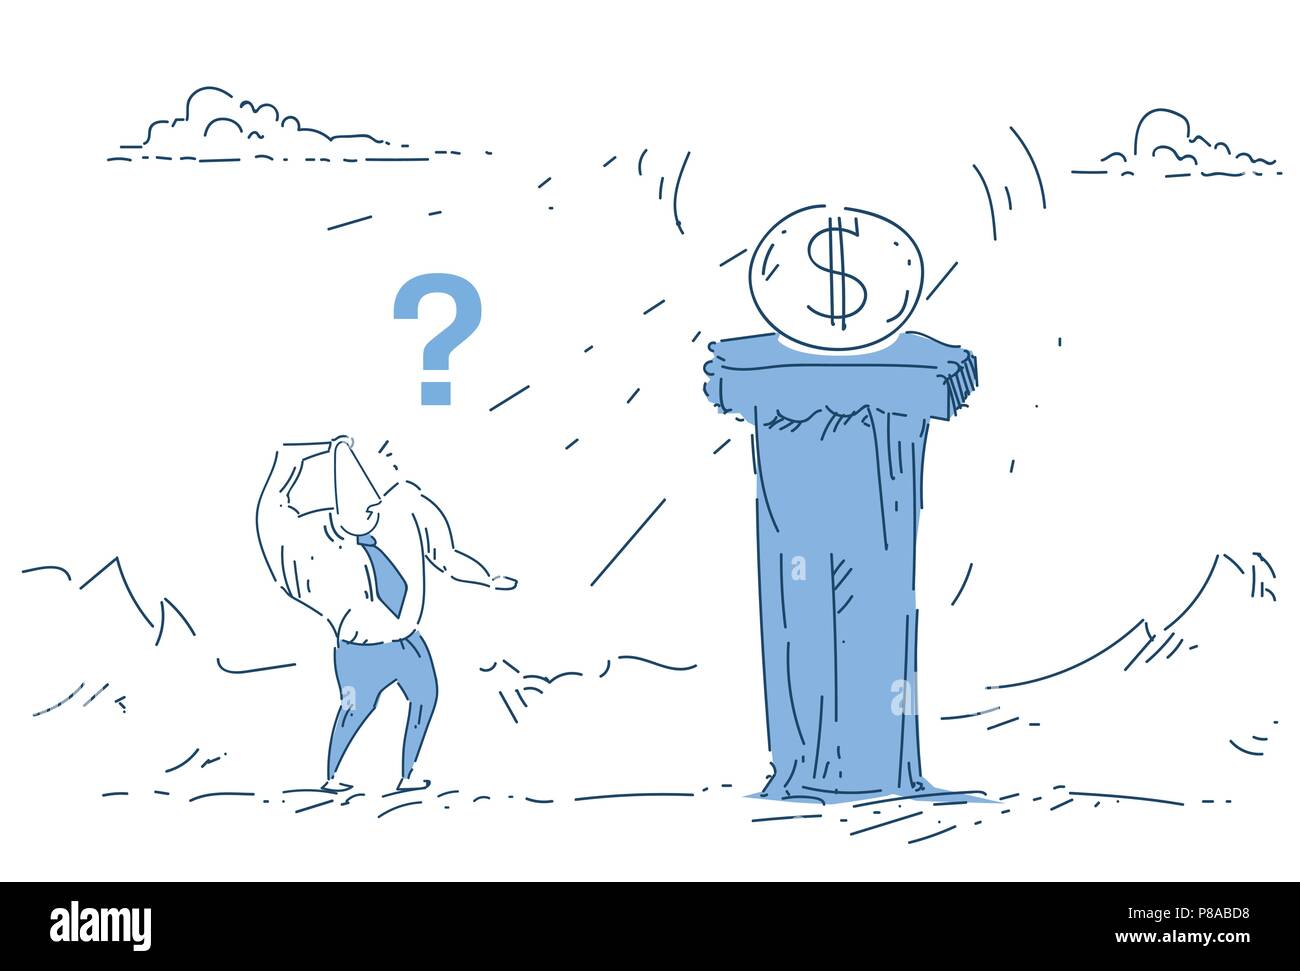 Unternehmer stehen Fragezeichen Geld Münzen dollar Säule Konzept auf weißem Hintergrund Skizze doodle Stock Vektor